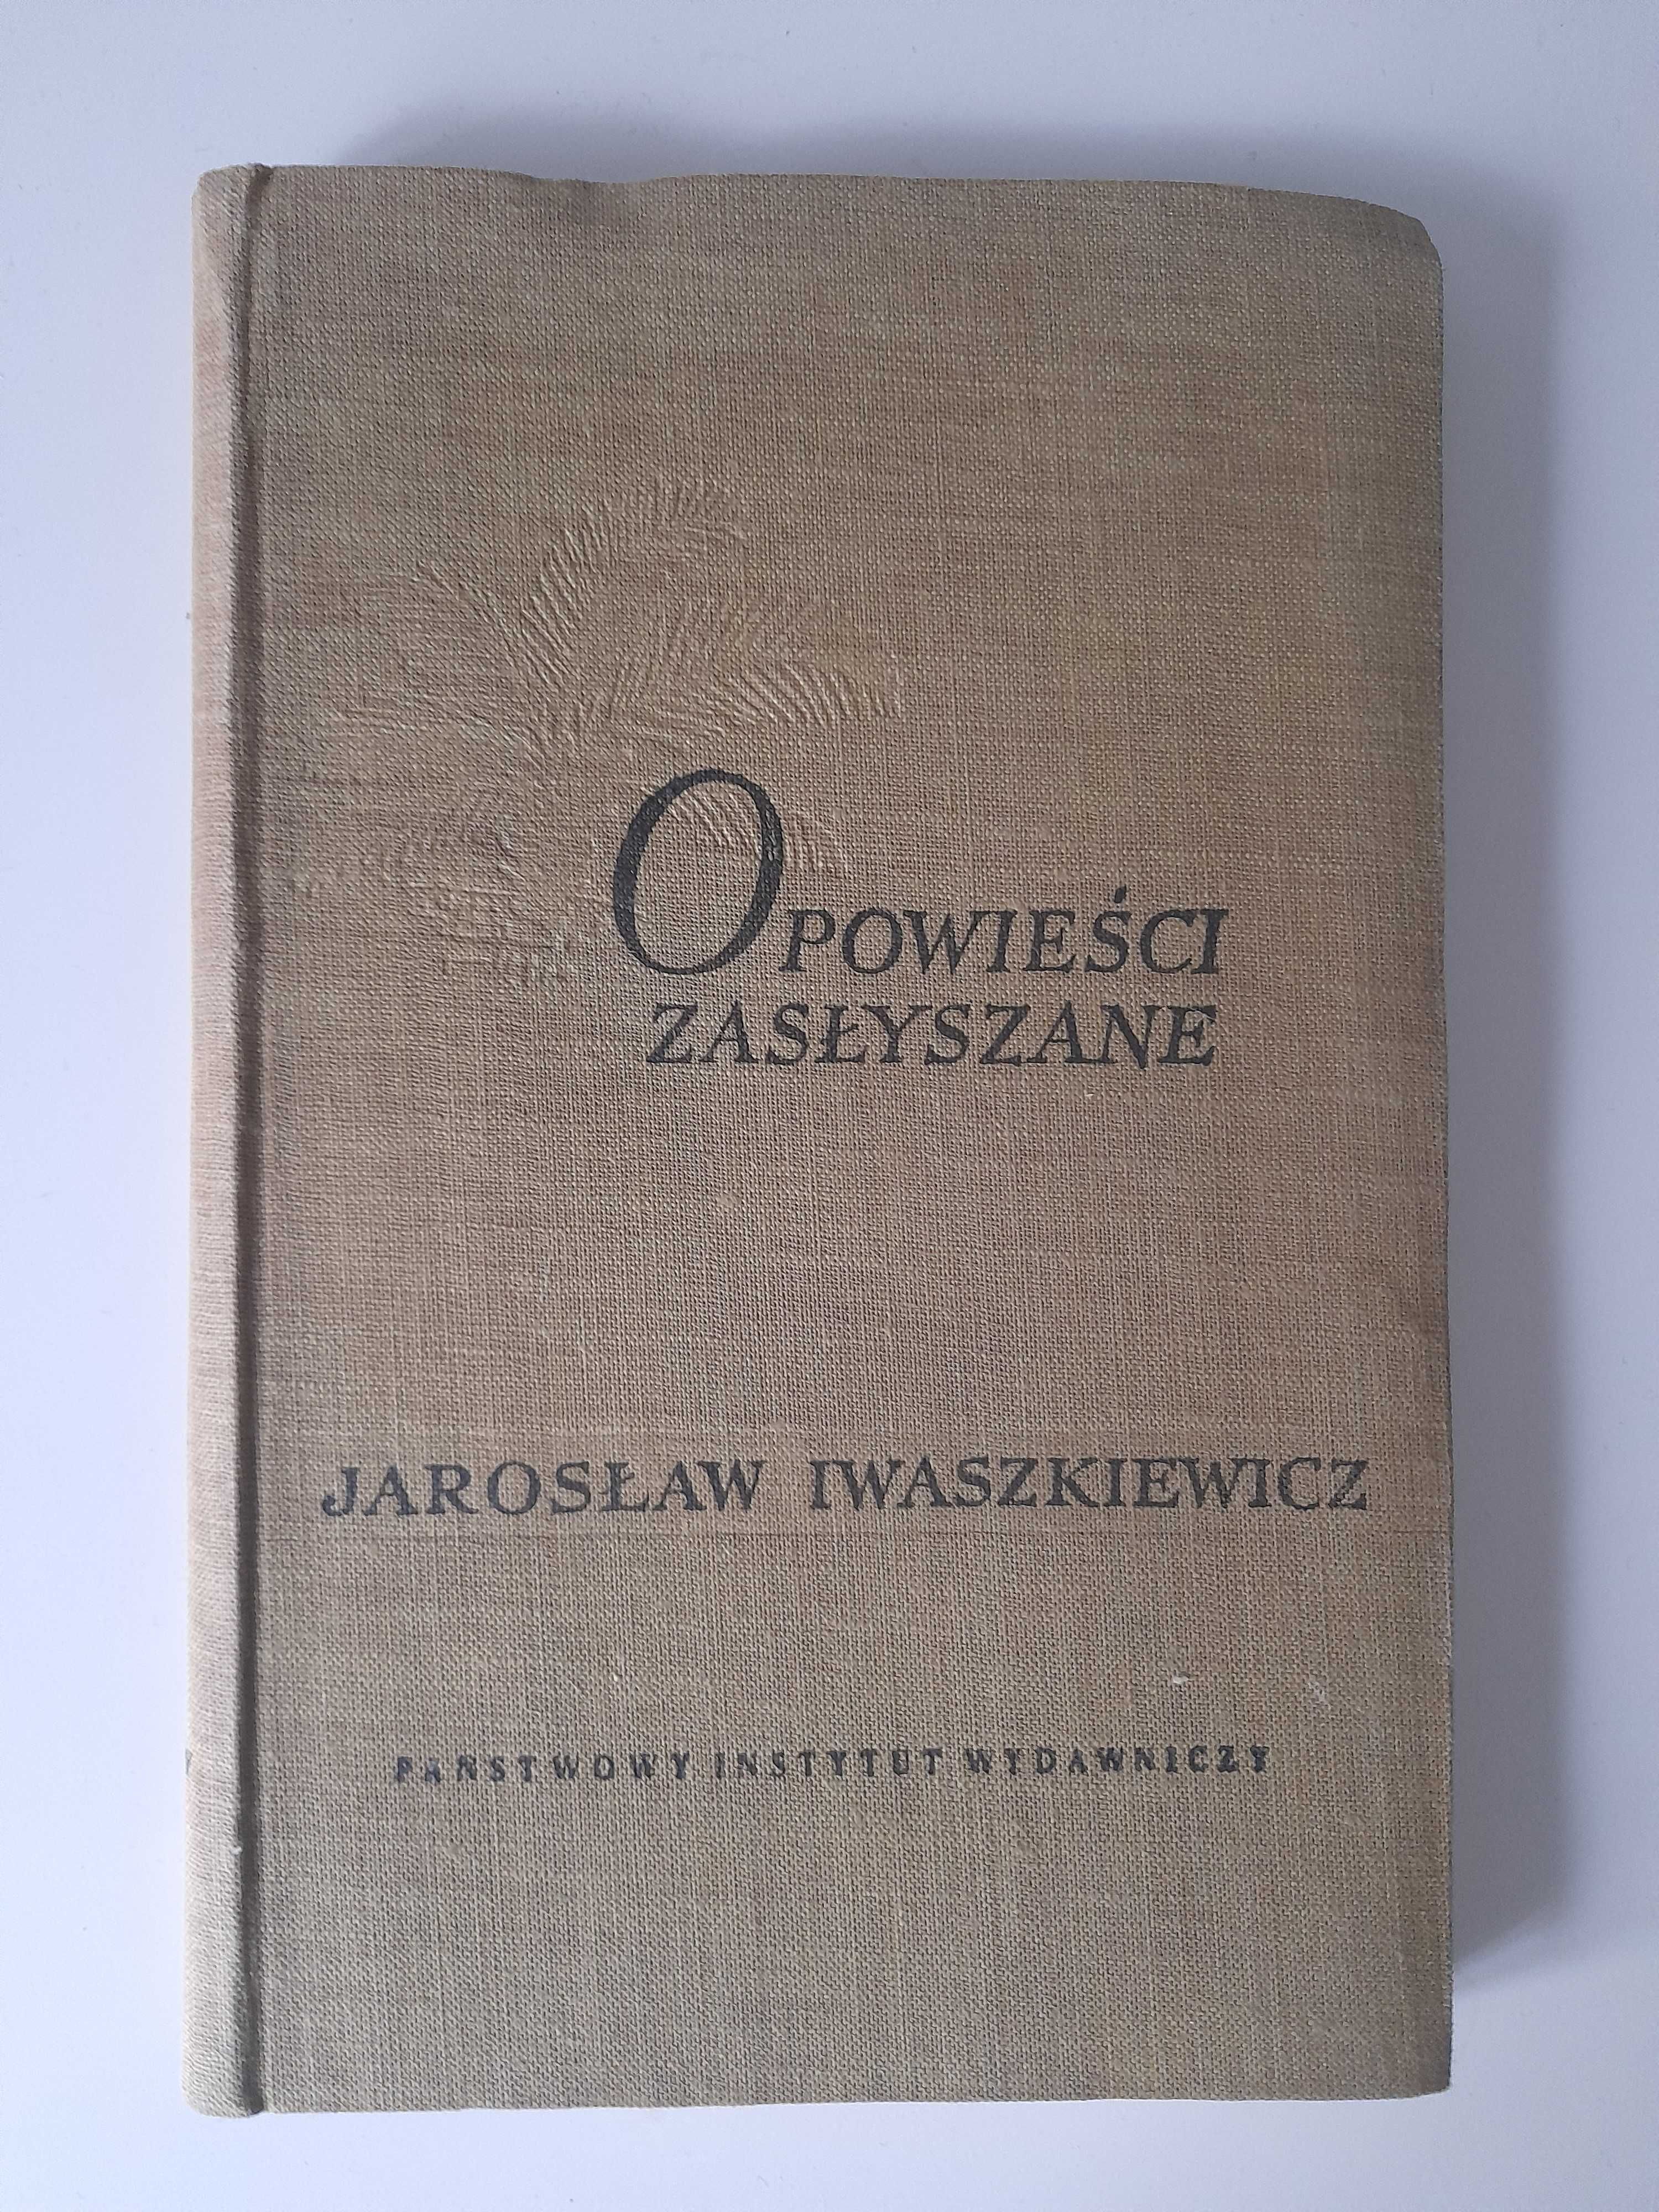 Opowiadania wybrane Jarosław Iwaszkiewicz + 1 książka gratis